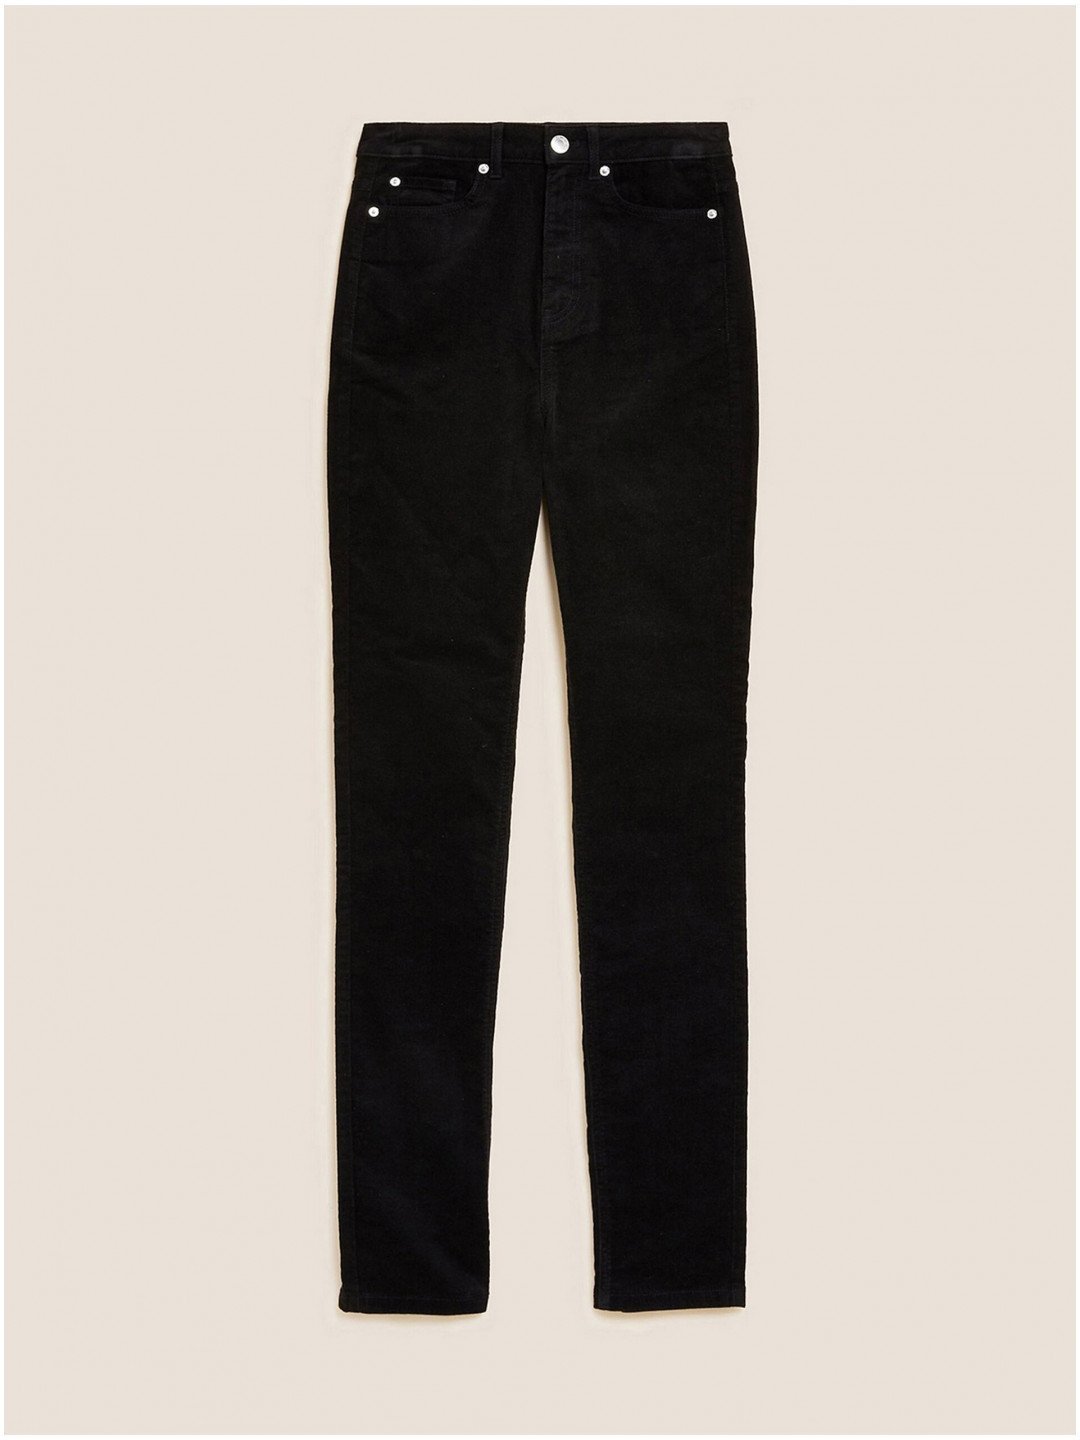 Černé dámské manšestrové kalhoty Marks & Spencer Sienna